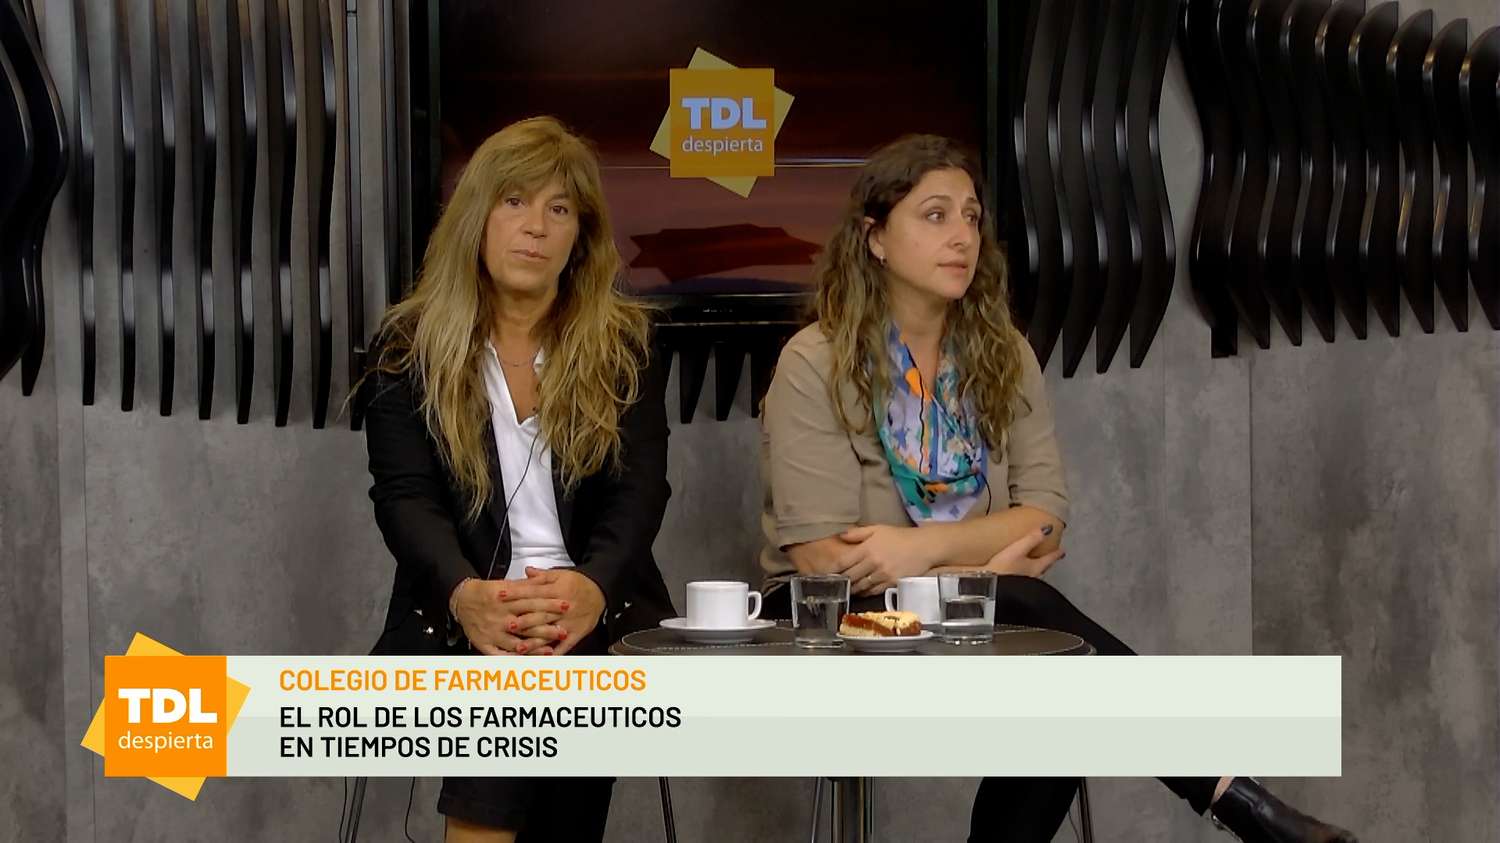 Vanesa Lamont y Claudia Traverso en Tandil Despierta por 104.1 Tandil FM y ECO TV.